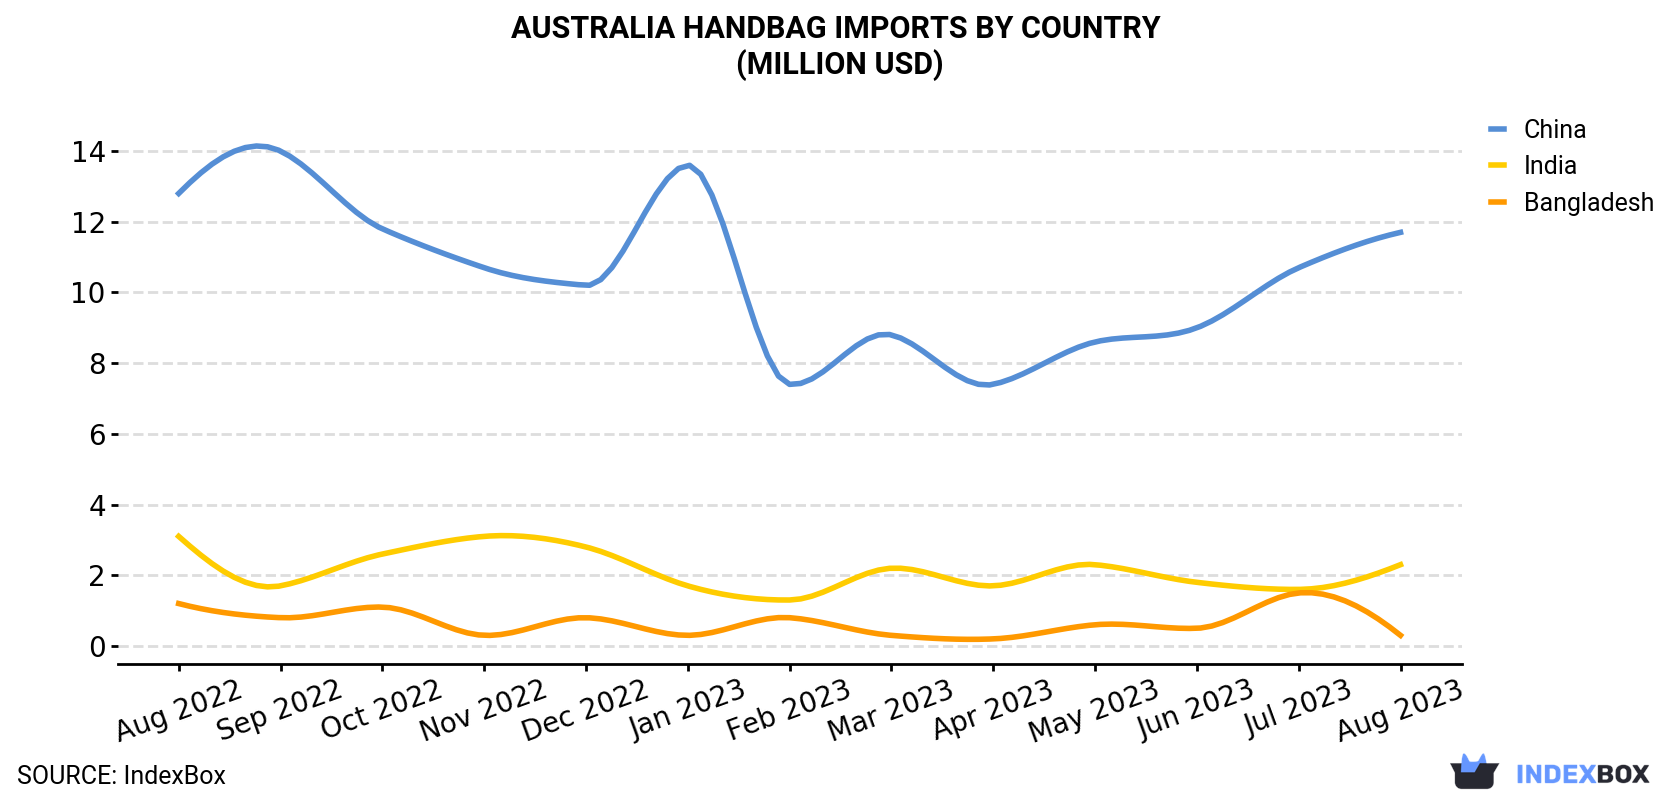 Australia Handbag Imports By Country (Million USD)